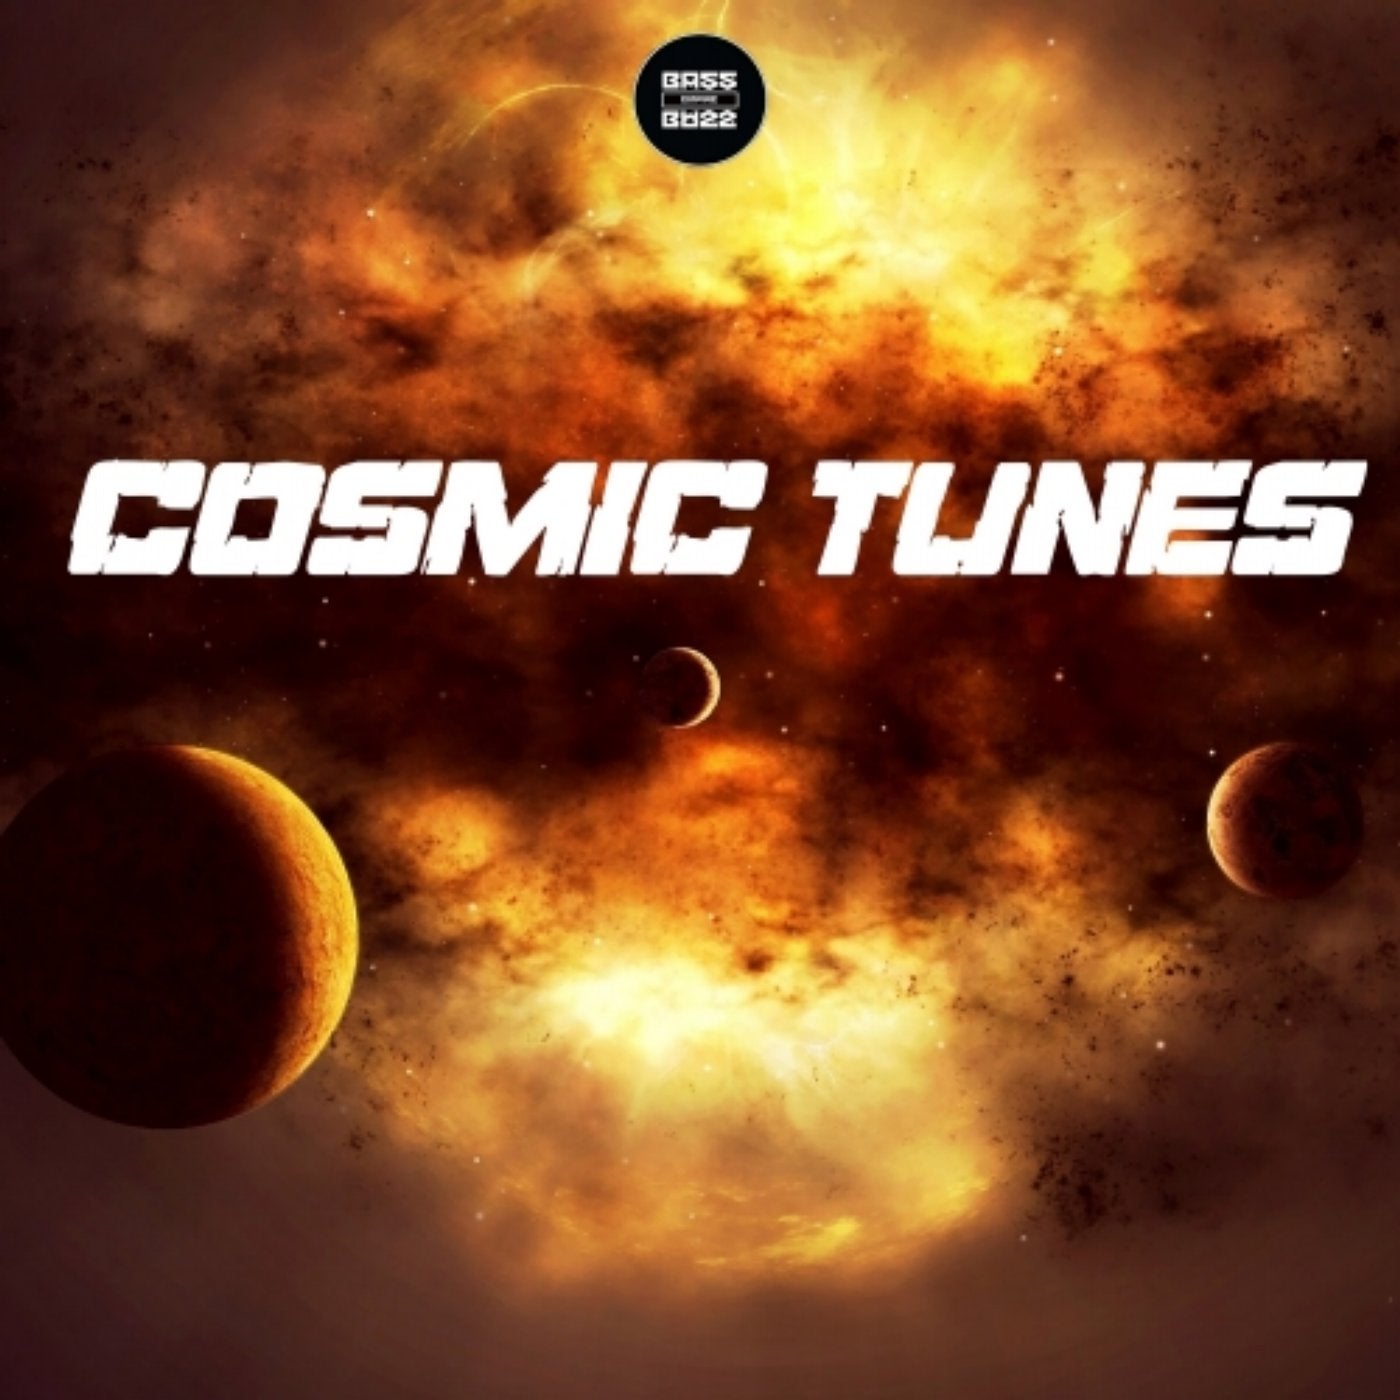 Cosmic Tunes